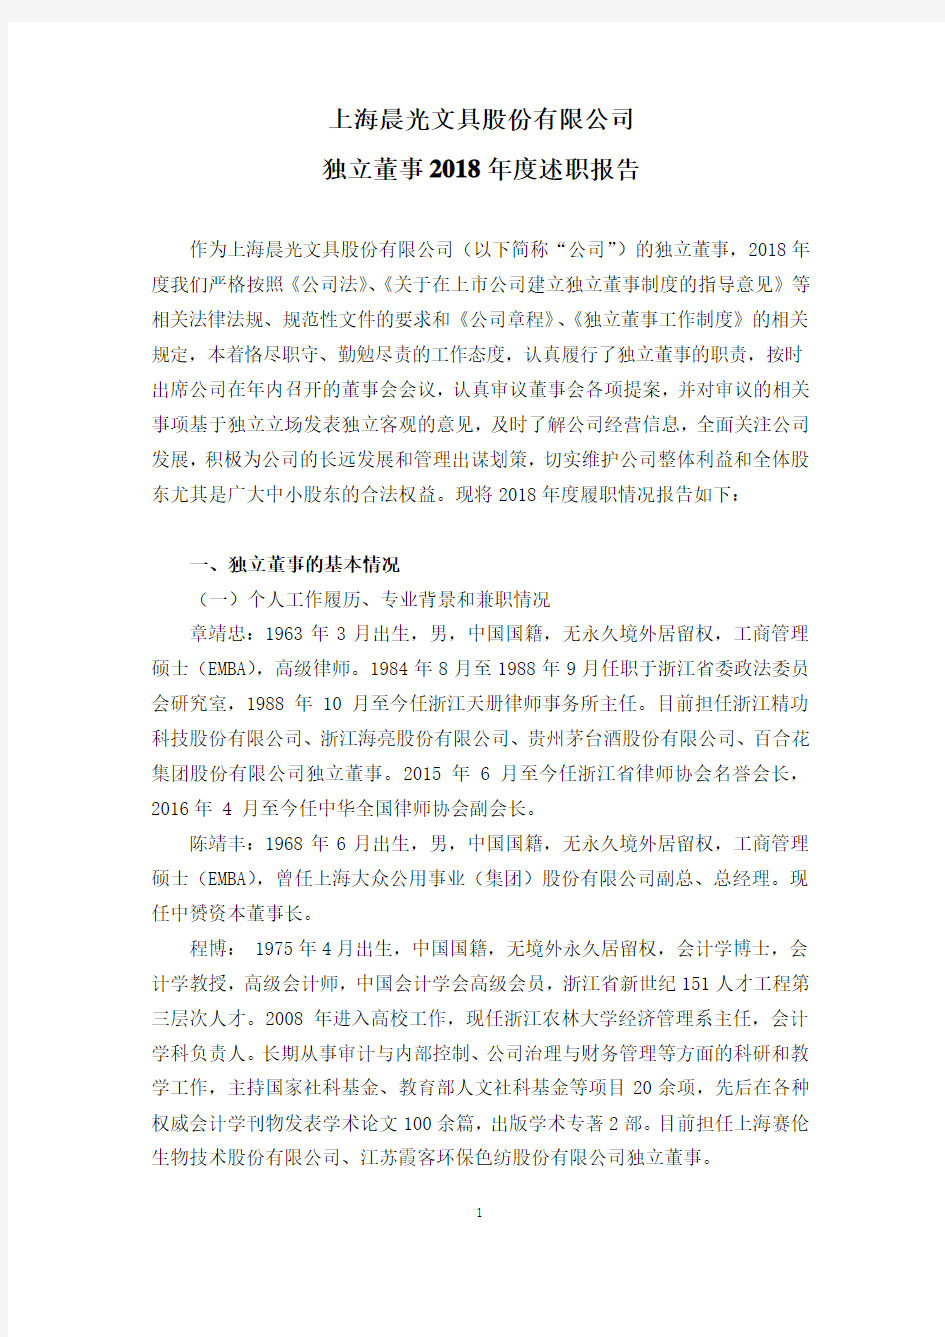 上海晨光文具股份有限公司独立董事年度述职报告.pdf